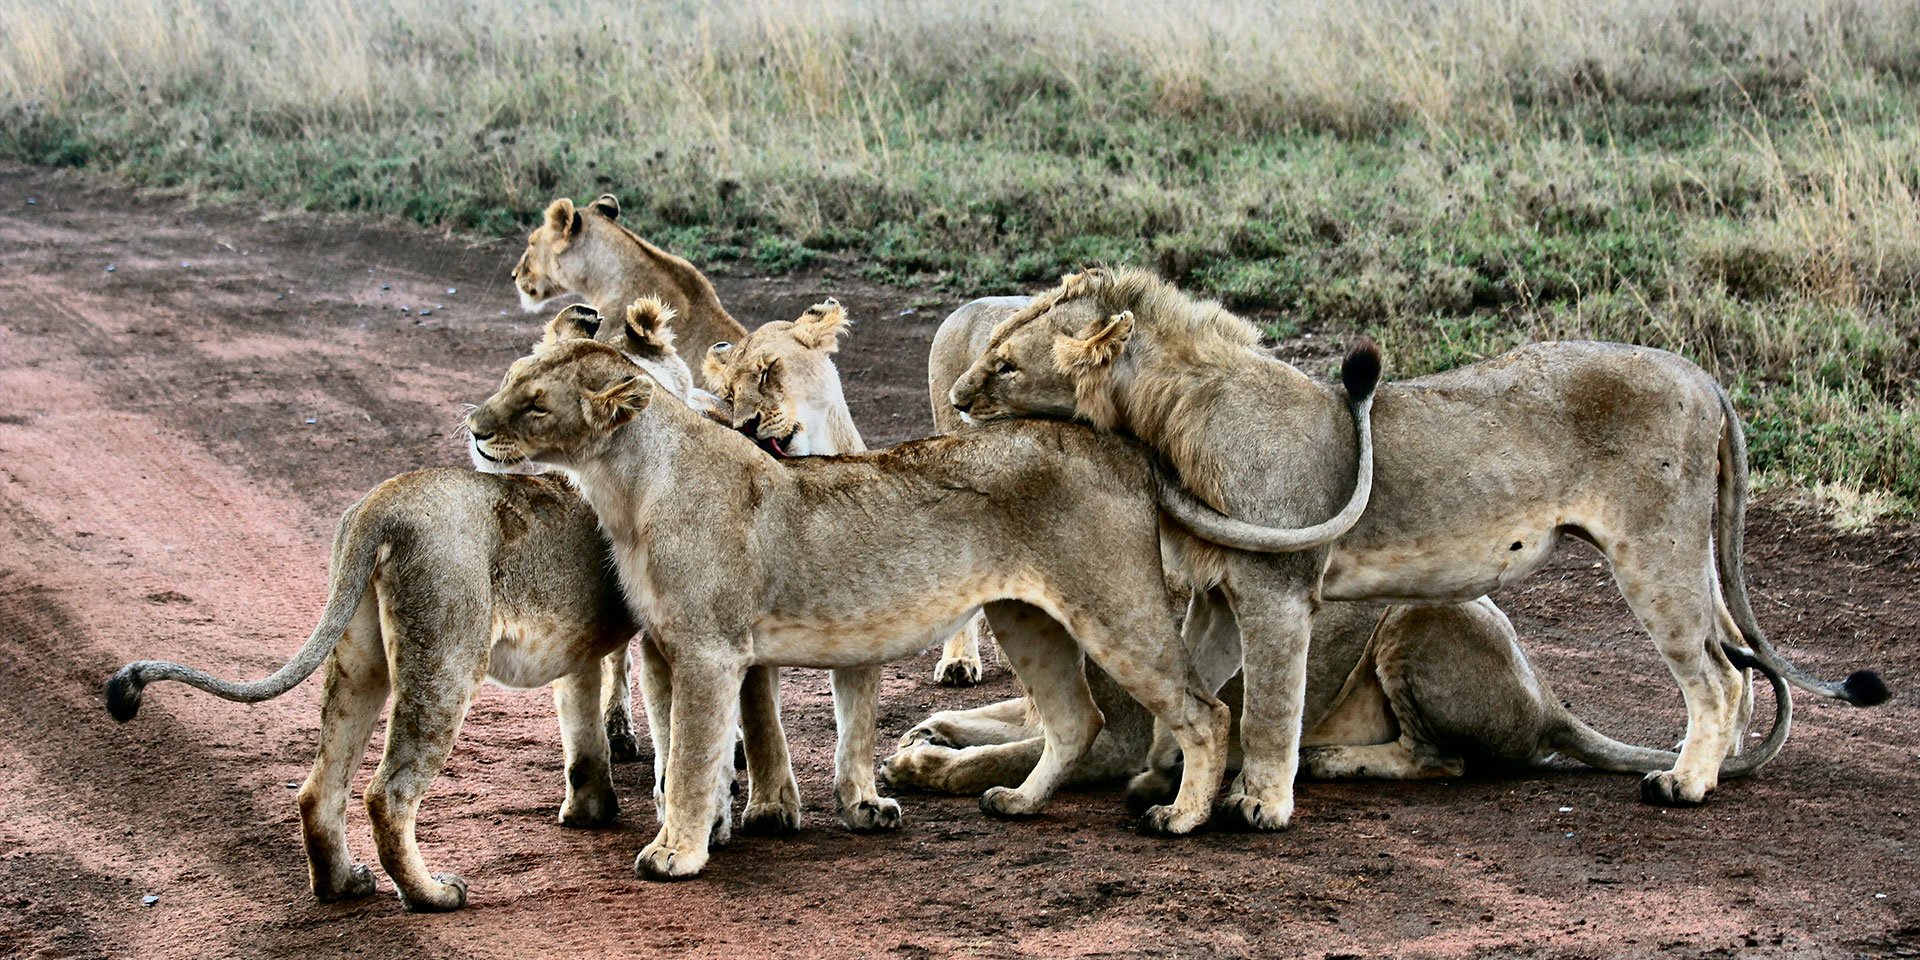 Loin pride sighting on african safari